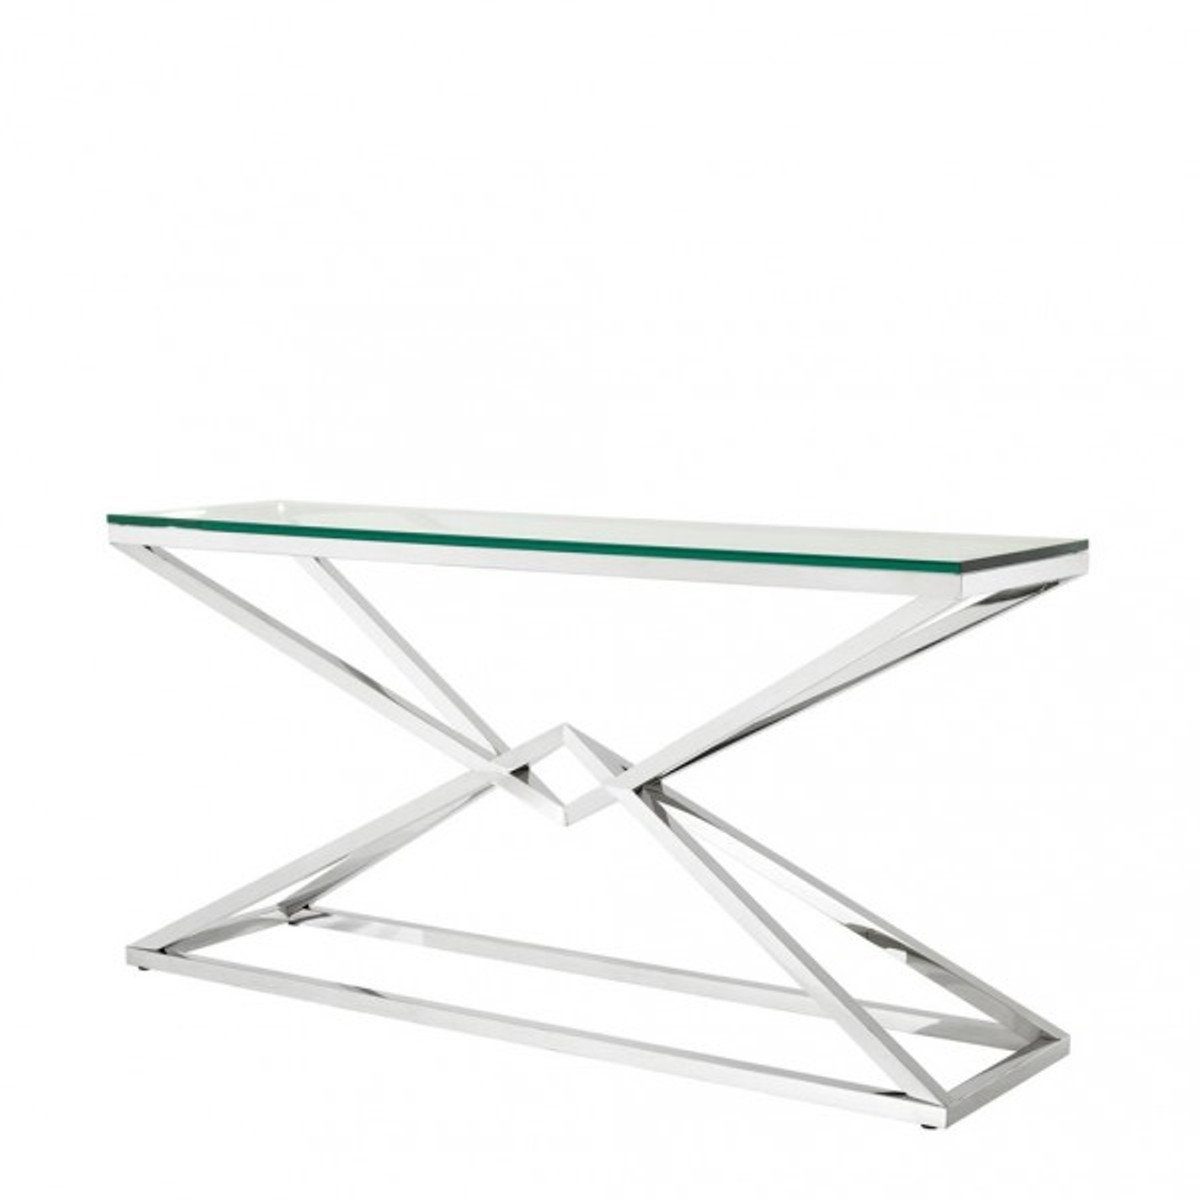 Casa Padrino Beistelltisch Luxus Konsole Edelstahl Nickel Finish 150 x 40 x H 74 cm - Konsolen Tisch Möbel